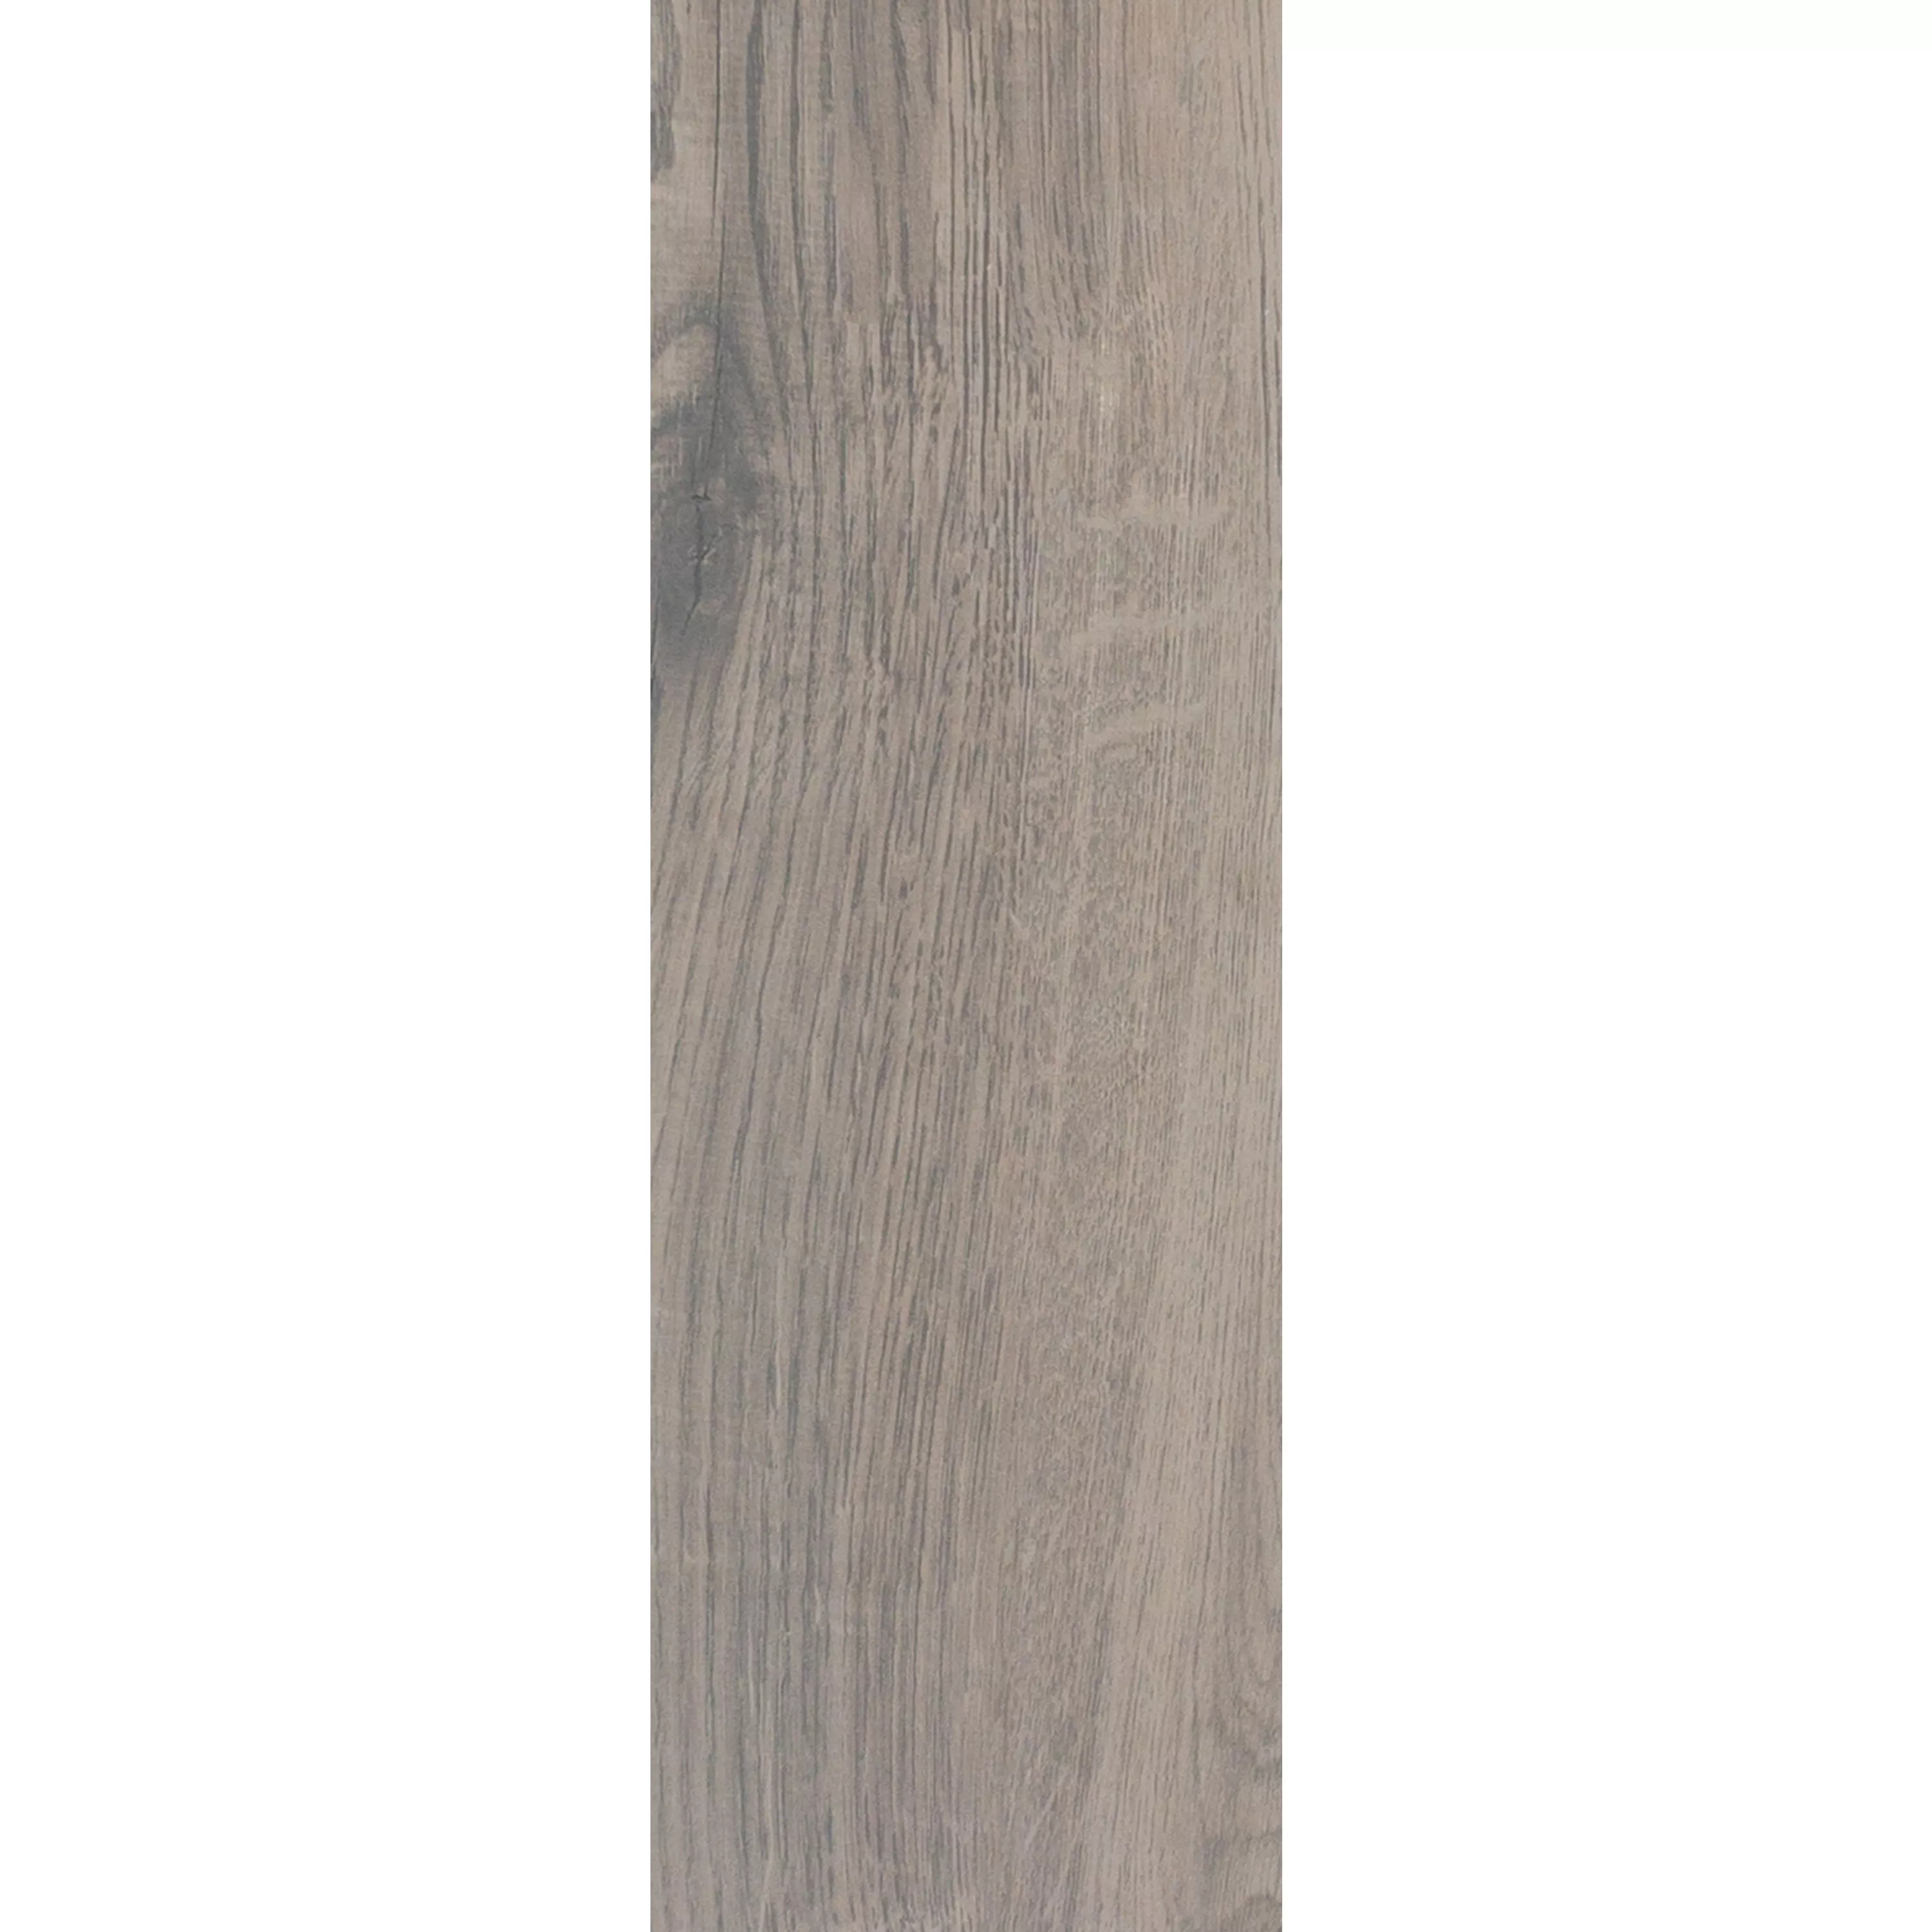 Muster von Bodenfliesen Holzoptik Fullwood Braun 20x120cm